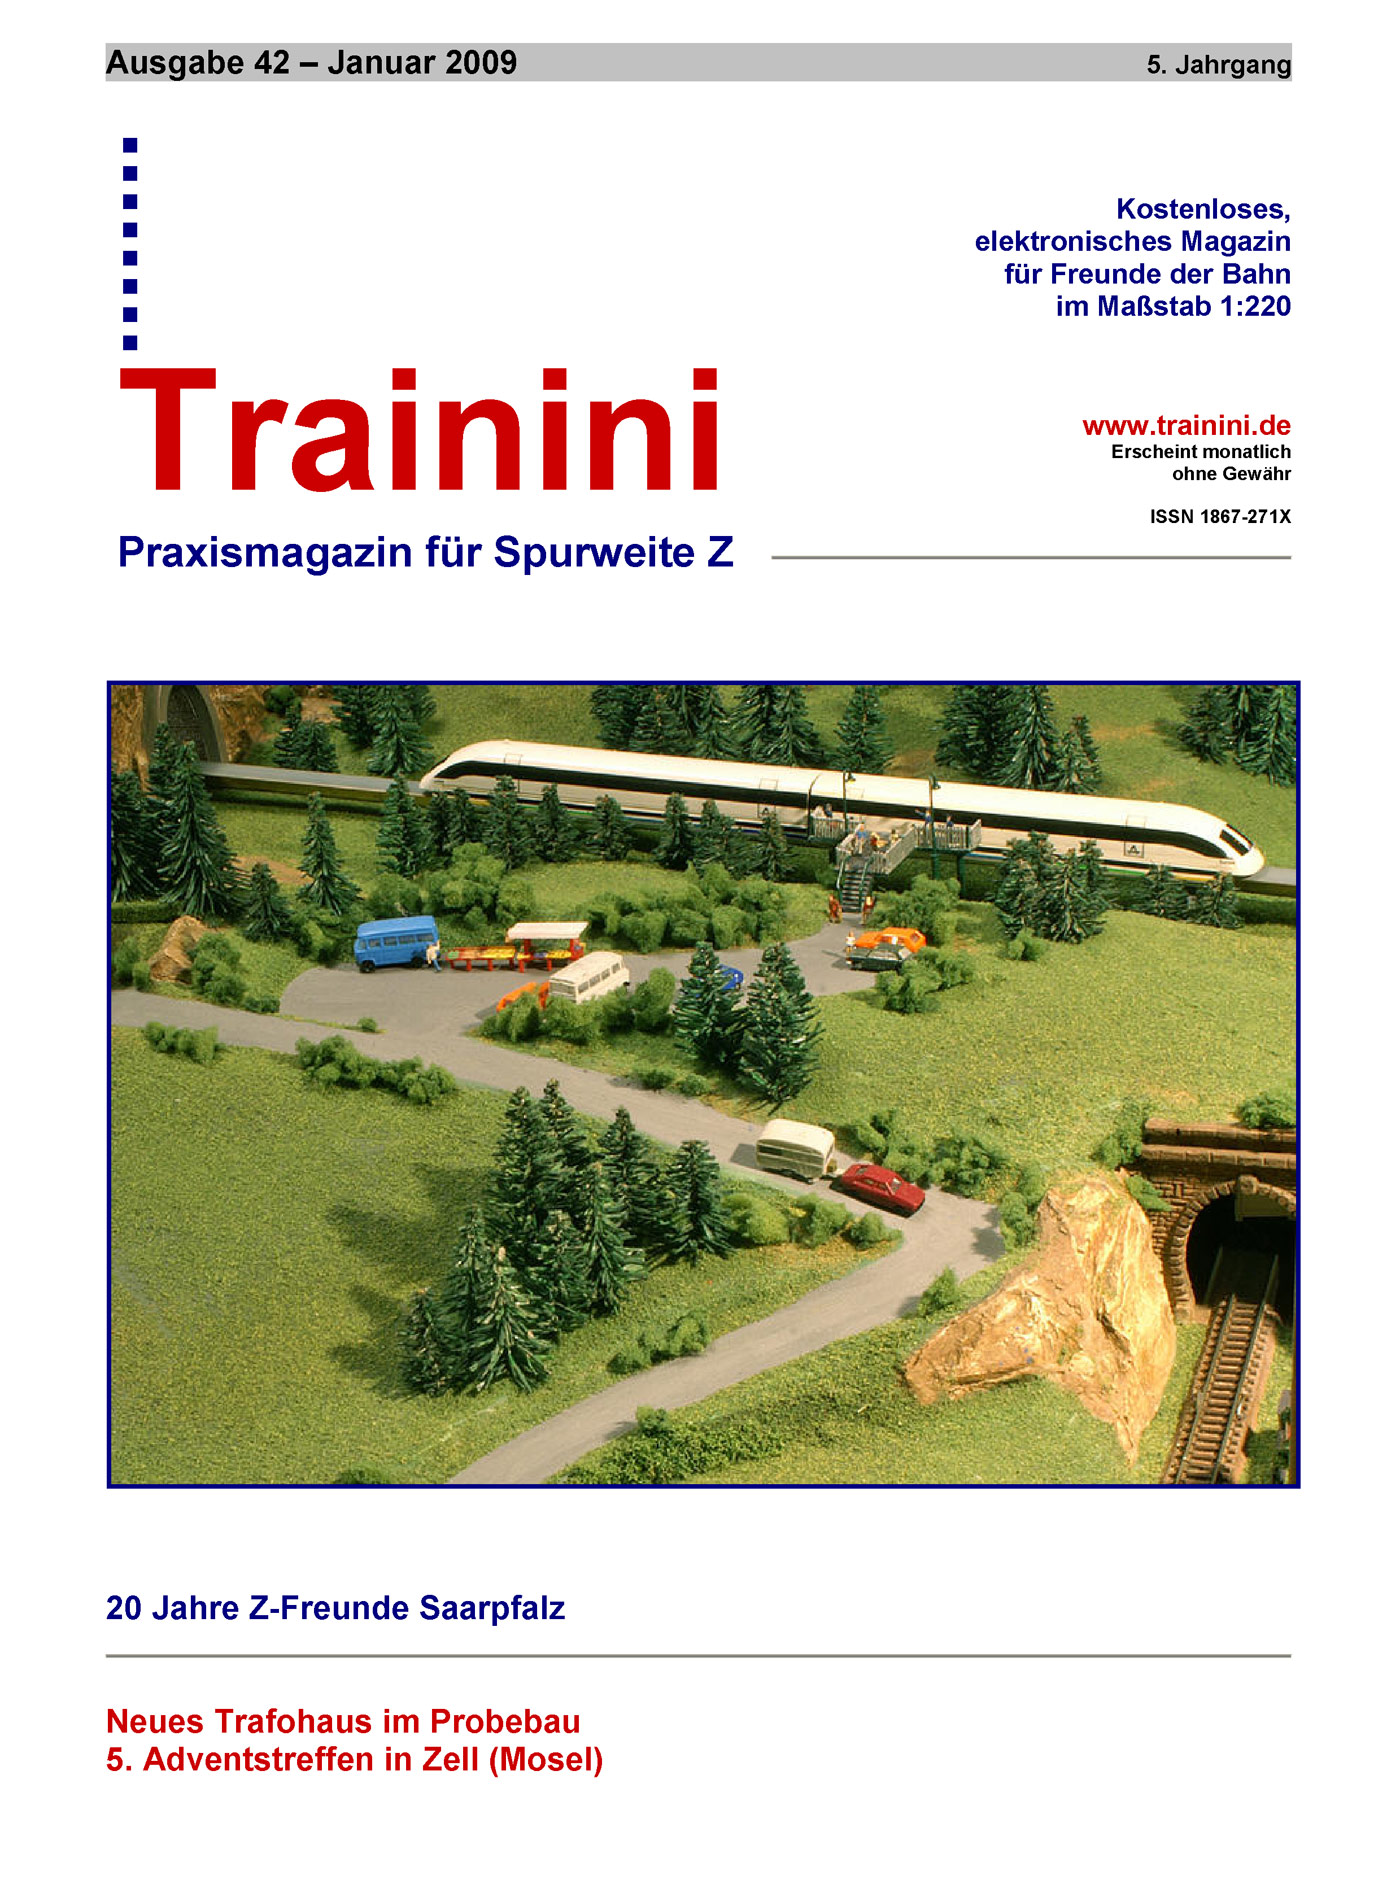 Trainini Ausgabe Januar 2009